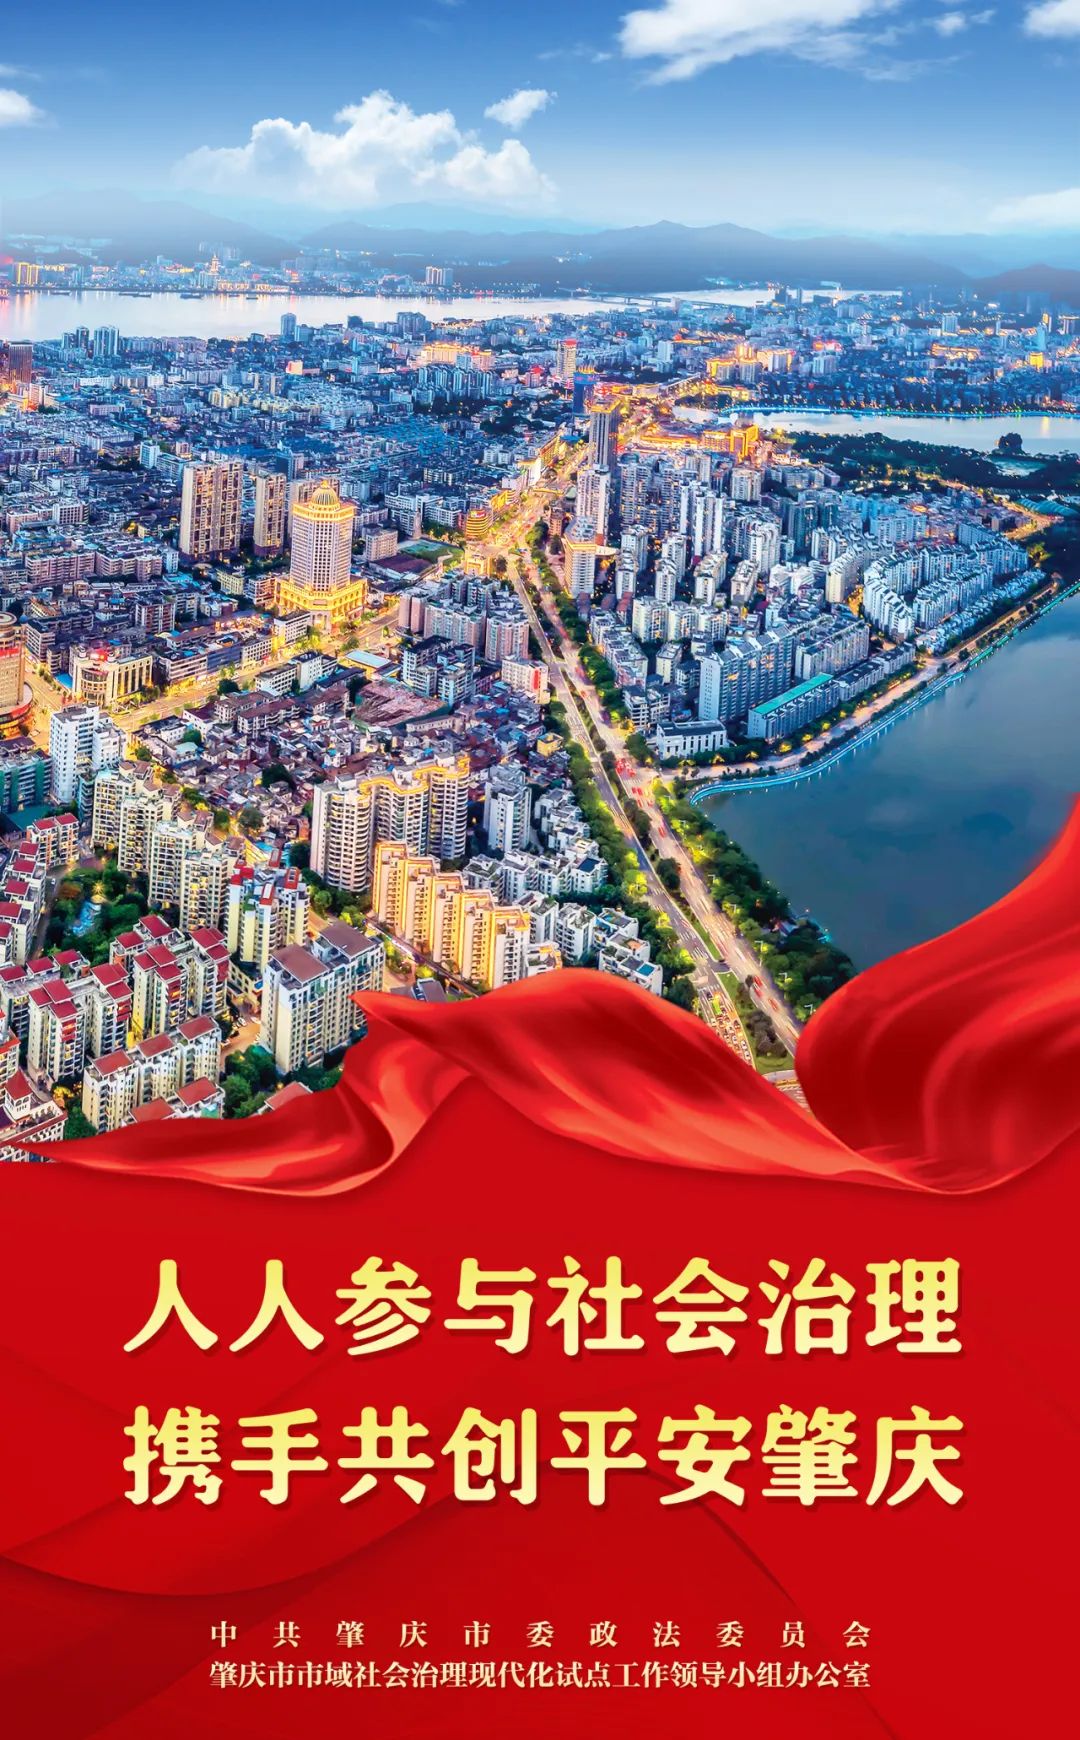 海报来了肇庆市全力创建全国市域社会治理现代化试点合格城市